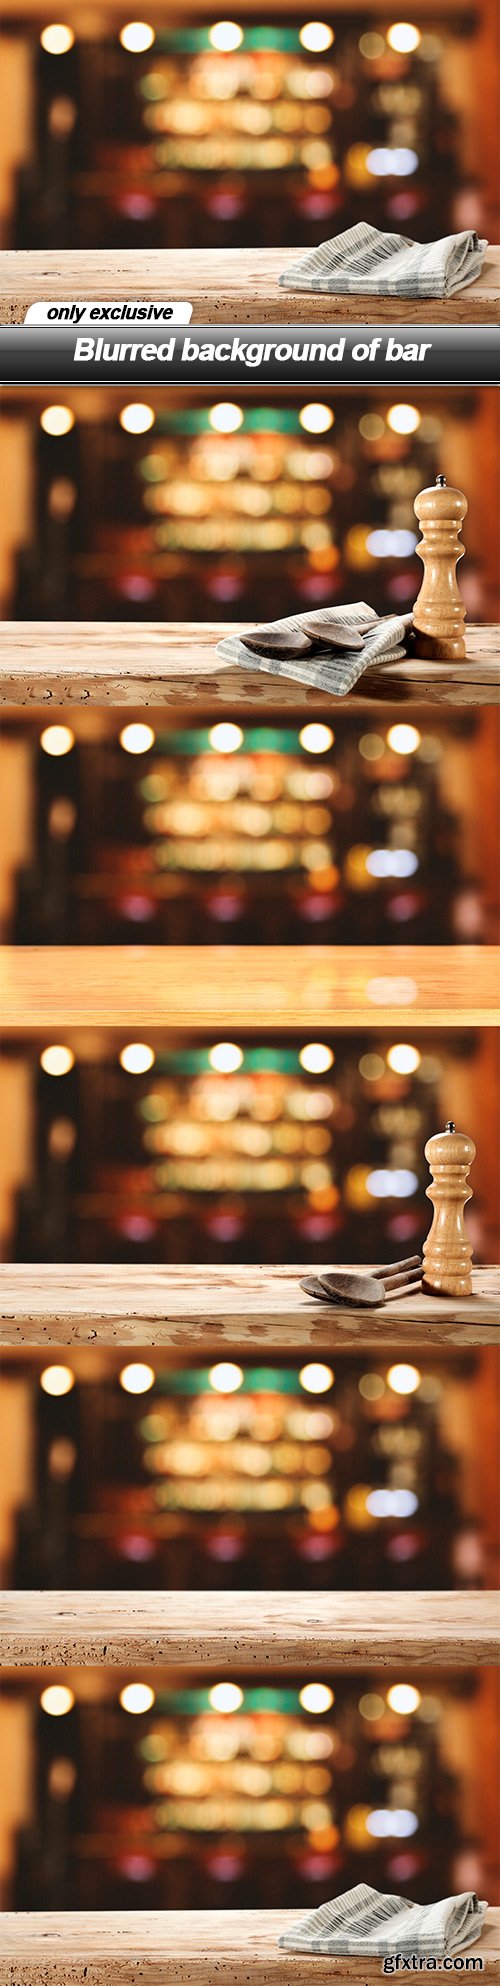 Blurred background of bar - 5 UHQ JPEG